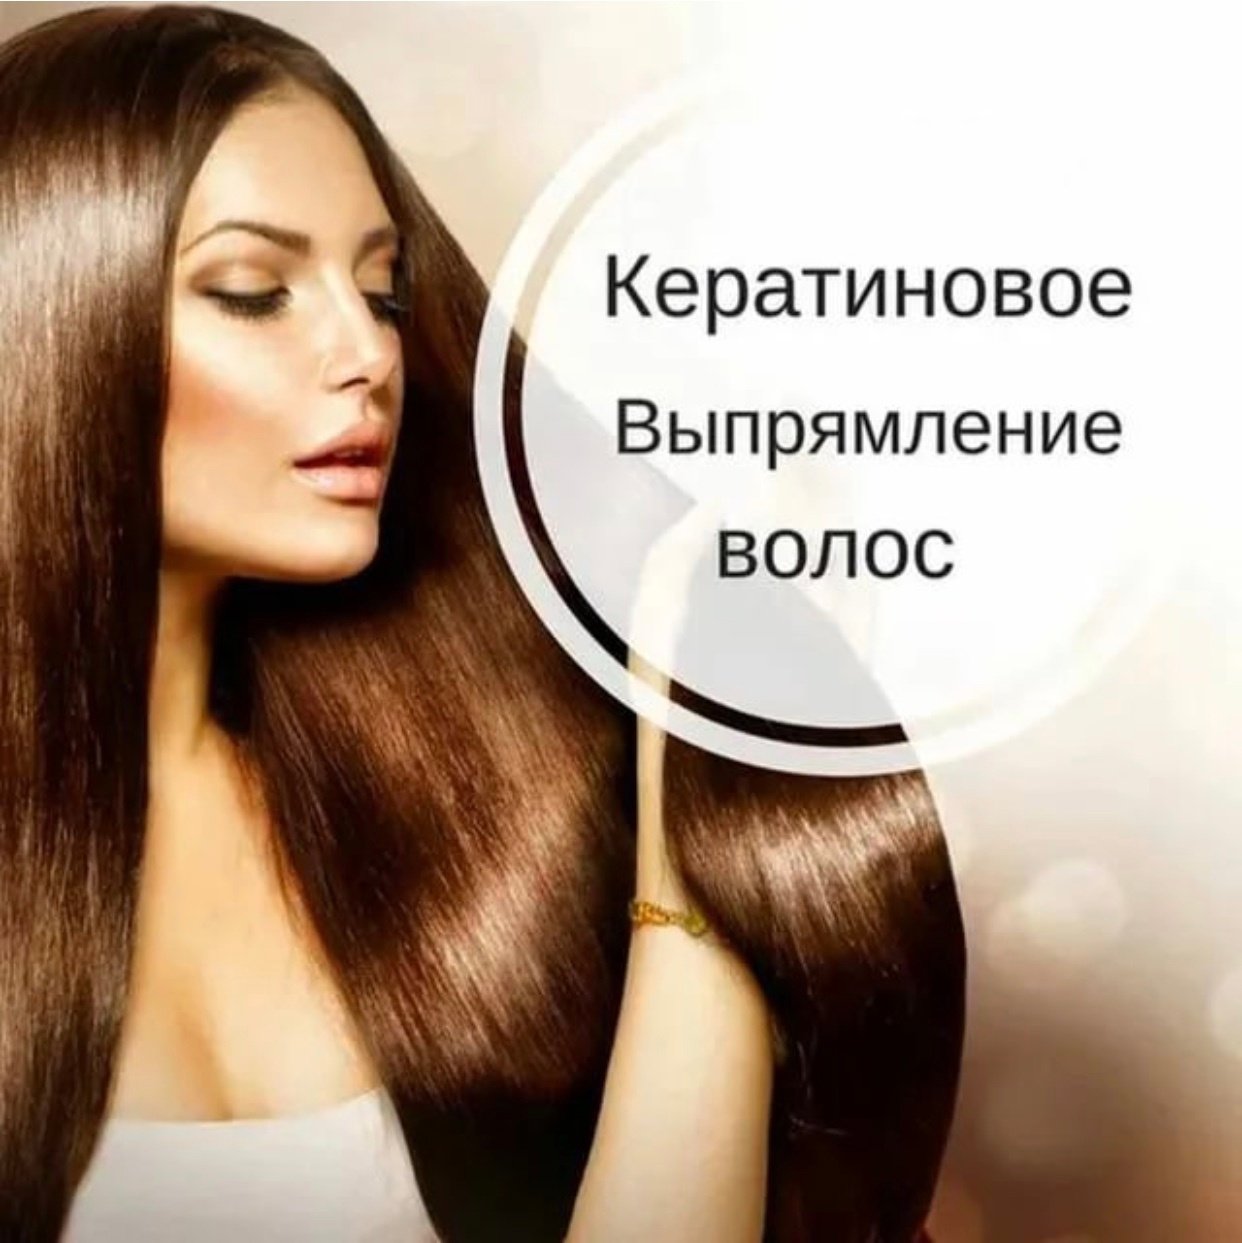 Время восстановления волос. Кератиновое выпрямление волос. Реклама кератина и ботокса для волос. Кератиновое выпрямление волос реклама. Реклама кератин и ботокс волос.